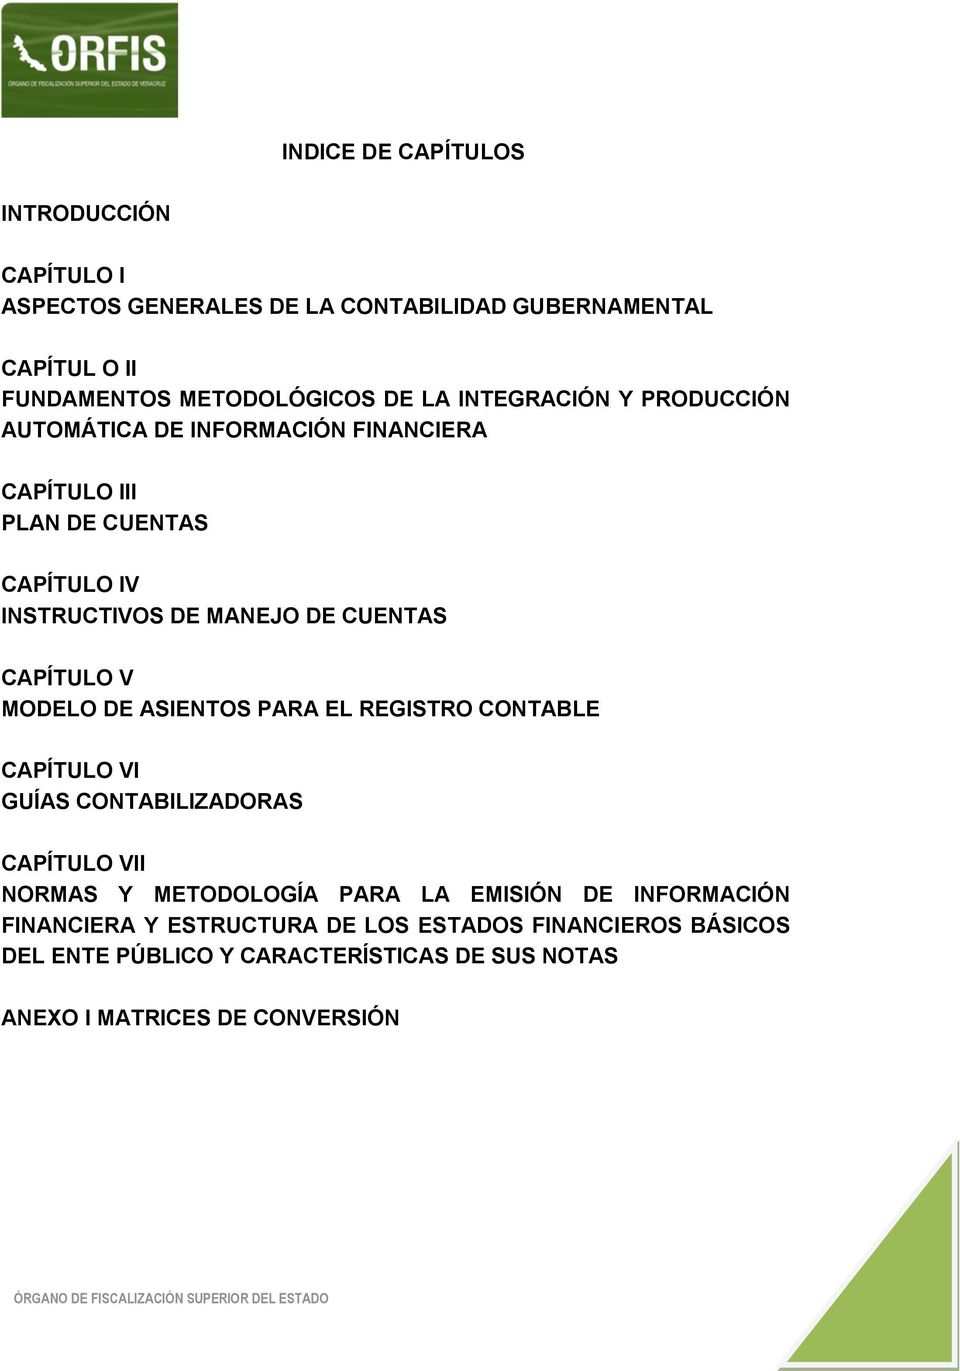 CAPÍTULO V MODELO DE ASIENTOS PARA EL REGISTRO CONTABLE CAPÍTULO VI GUÍAS CONTABILIZADORAS CAPÍTULO VII NORMAS Y METODOLOGÍA PARA LA EMISIÓN